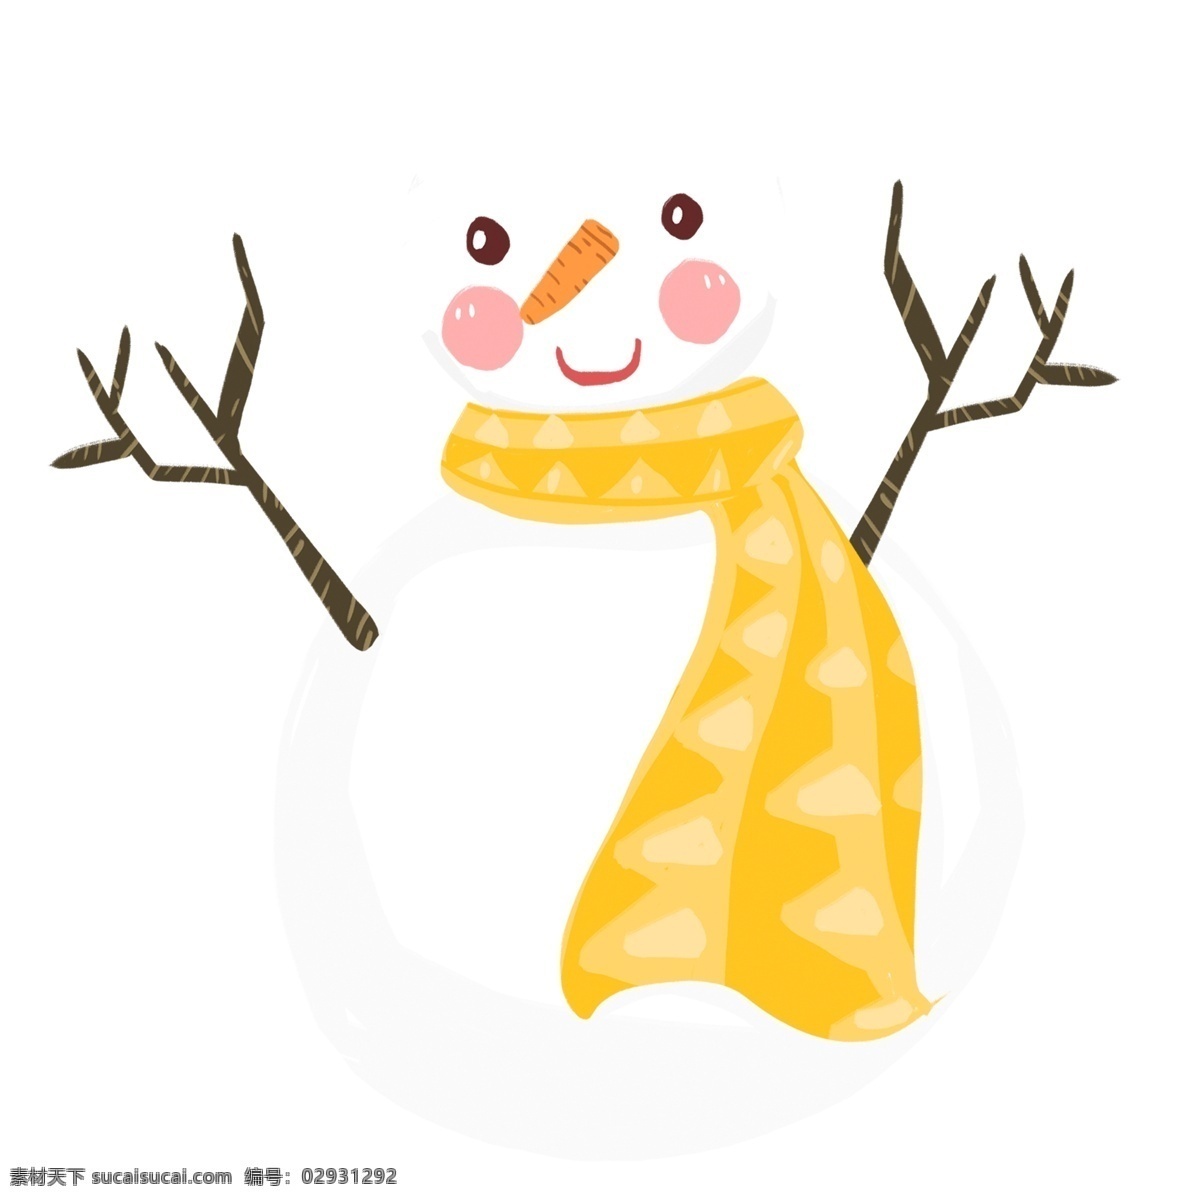 简约 可爱 围着 黄 围巾 雪人 原创 元素 冬季 卡通 树枝 黄色 设计元素 原创元素